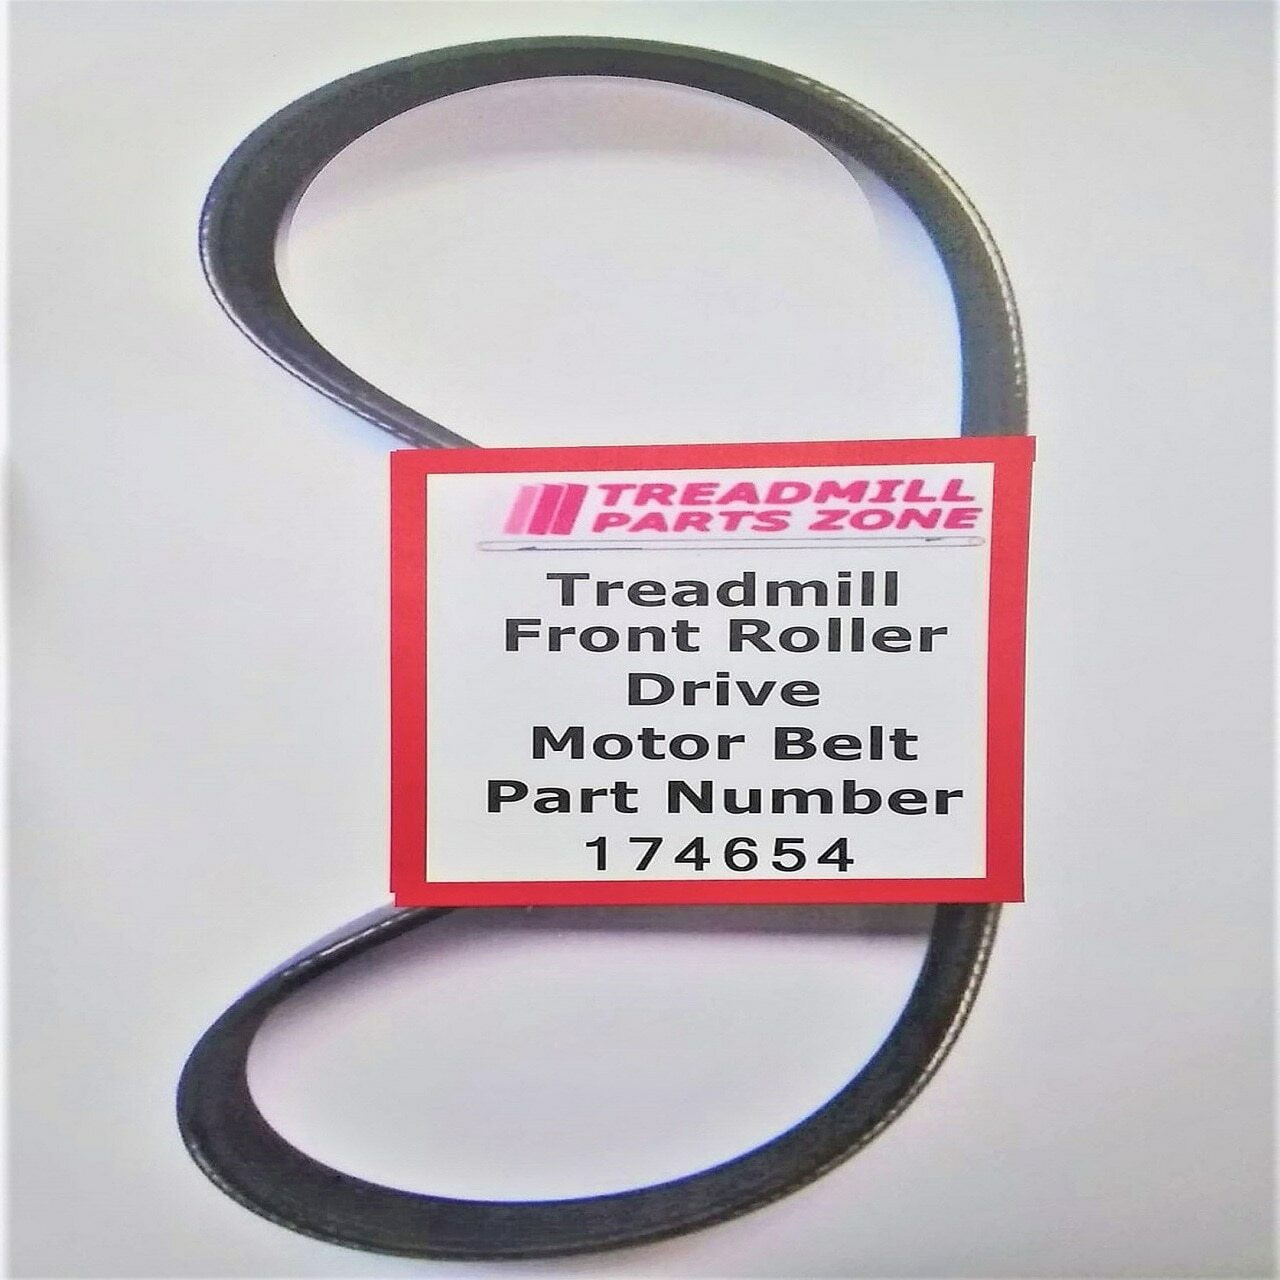 NordicTrack Treadmill Model 298013 APEX 4100I Motor Drive Belt Part 174654